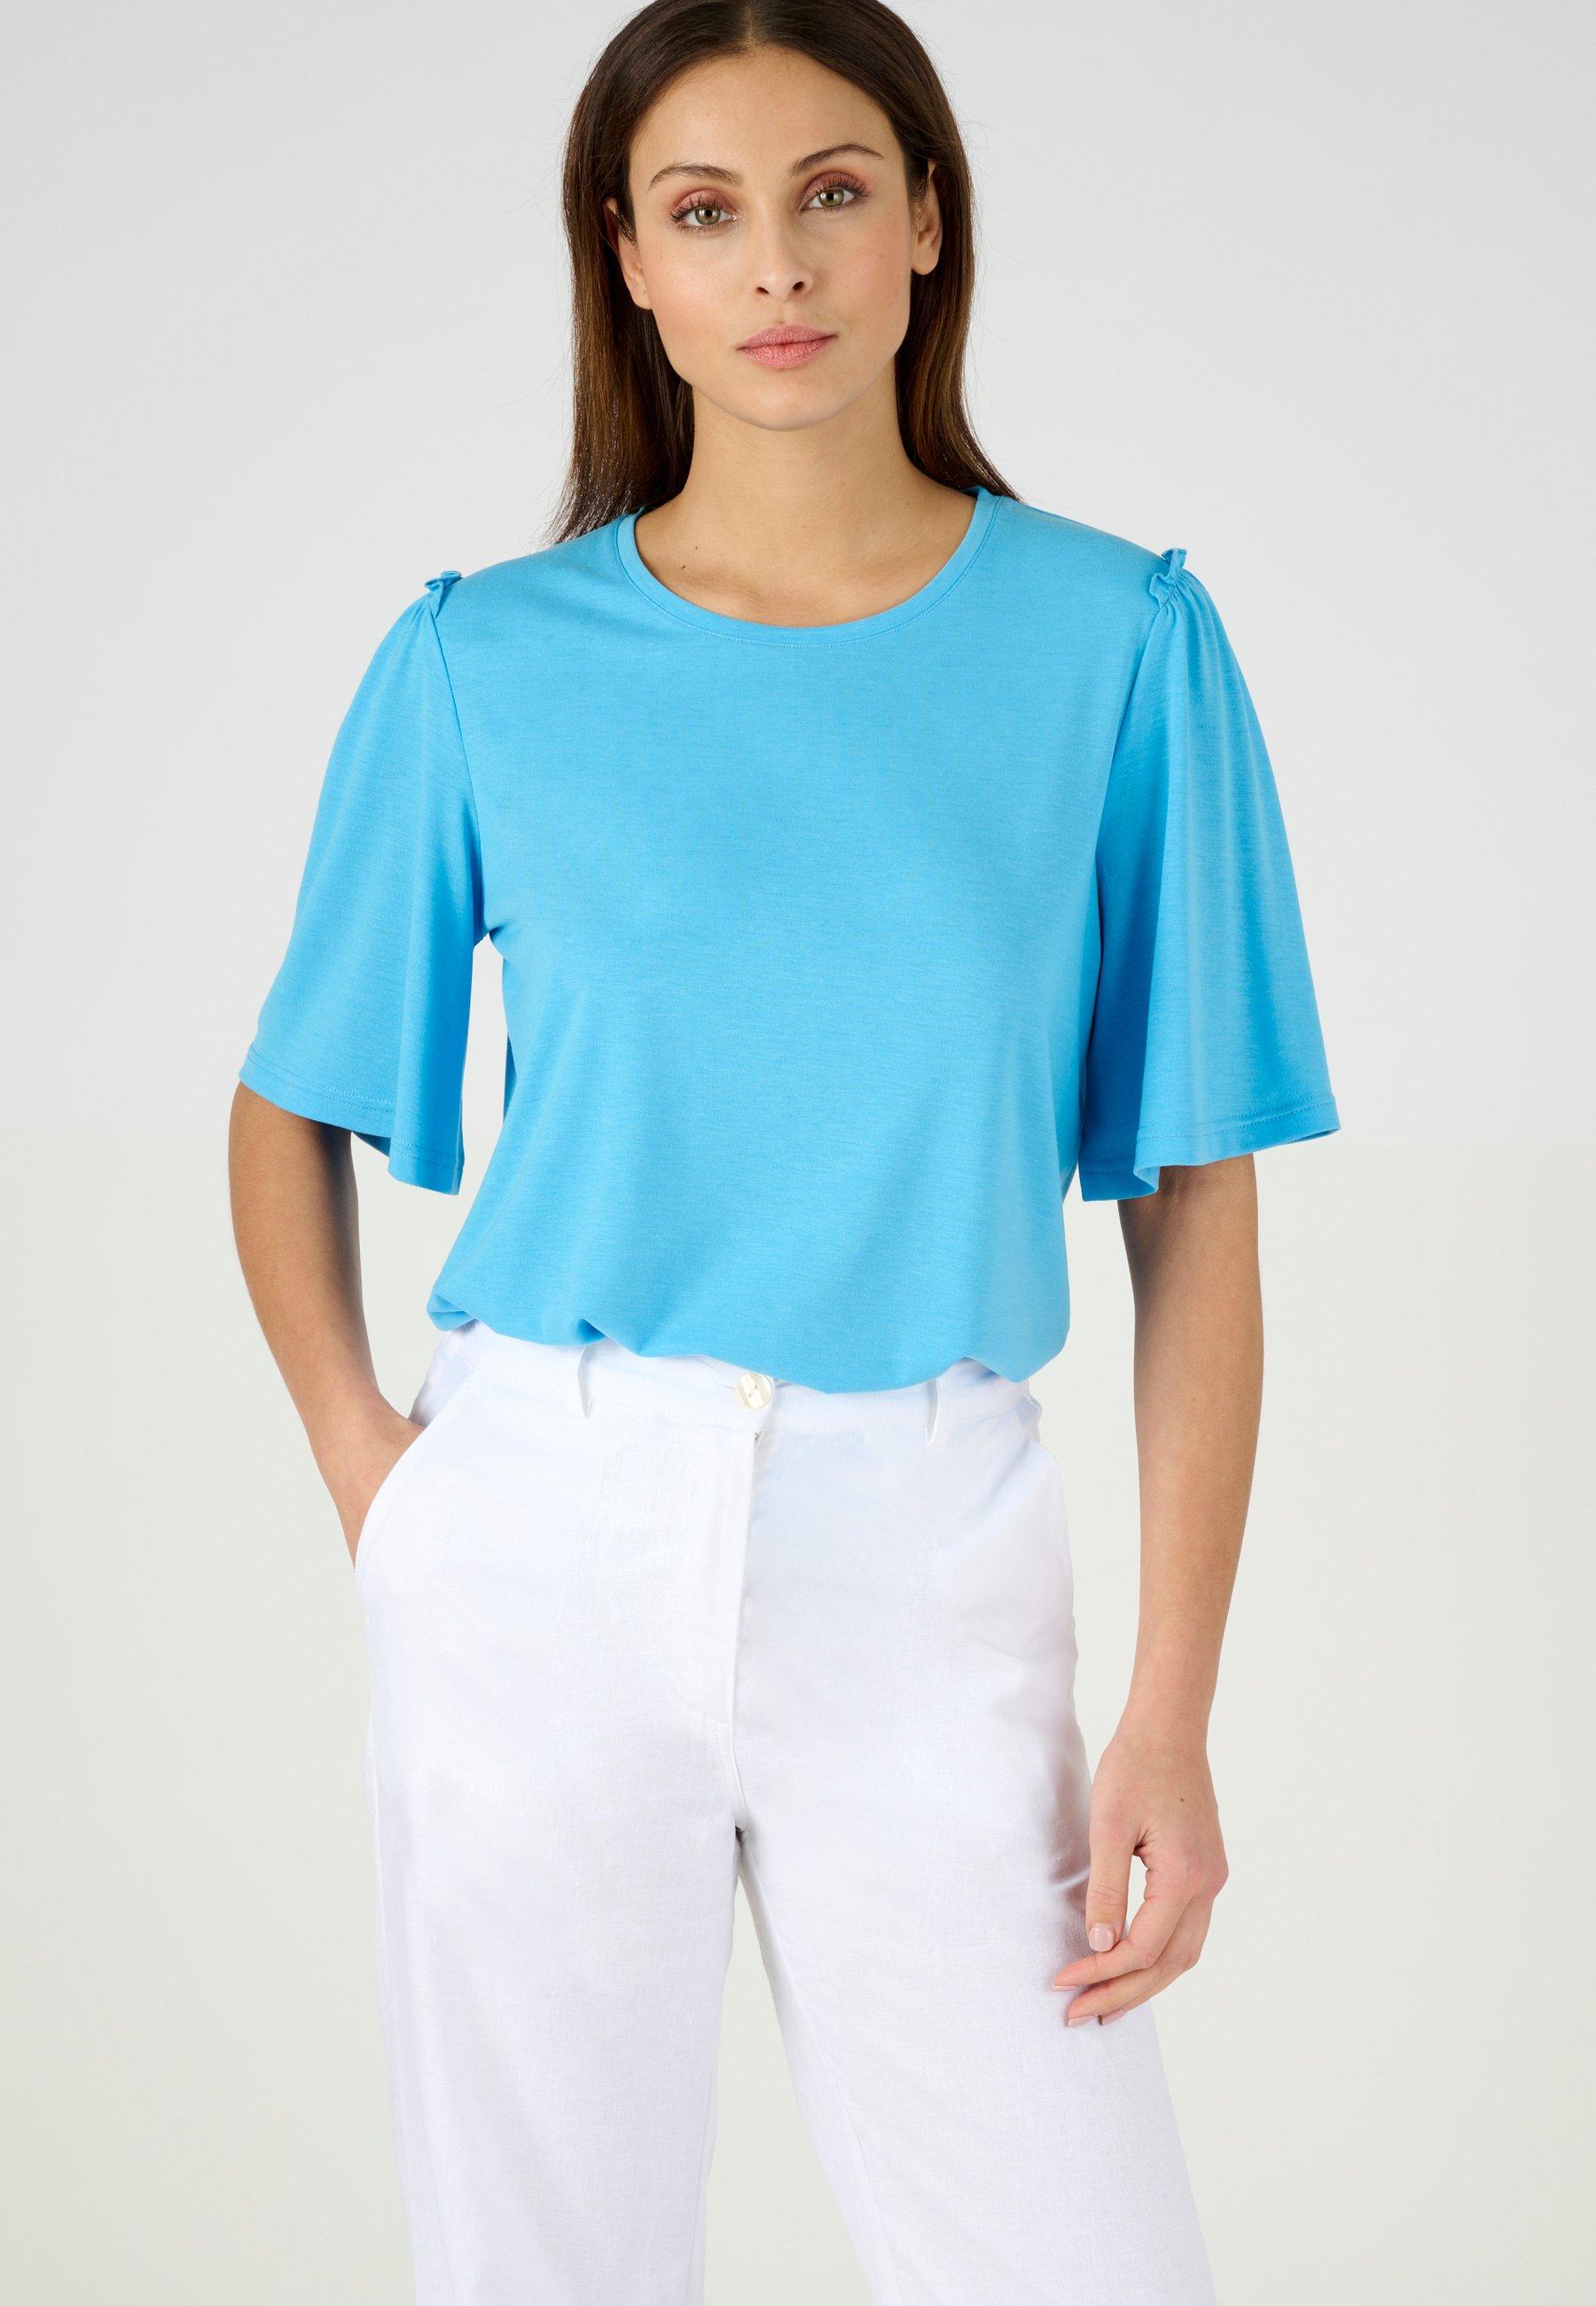 Climatyl-t-shirt. Damen Blau 42/44 von Damart